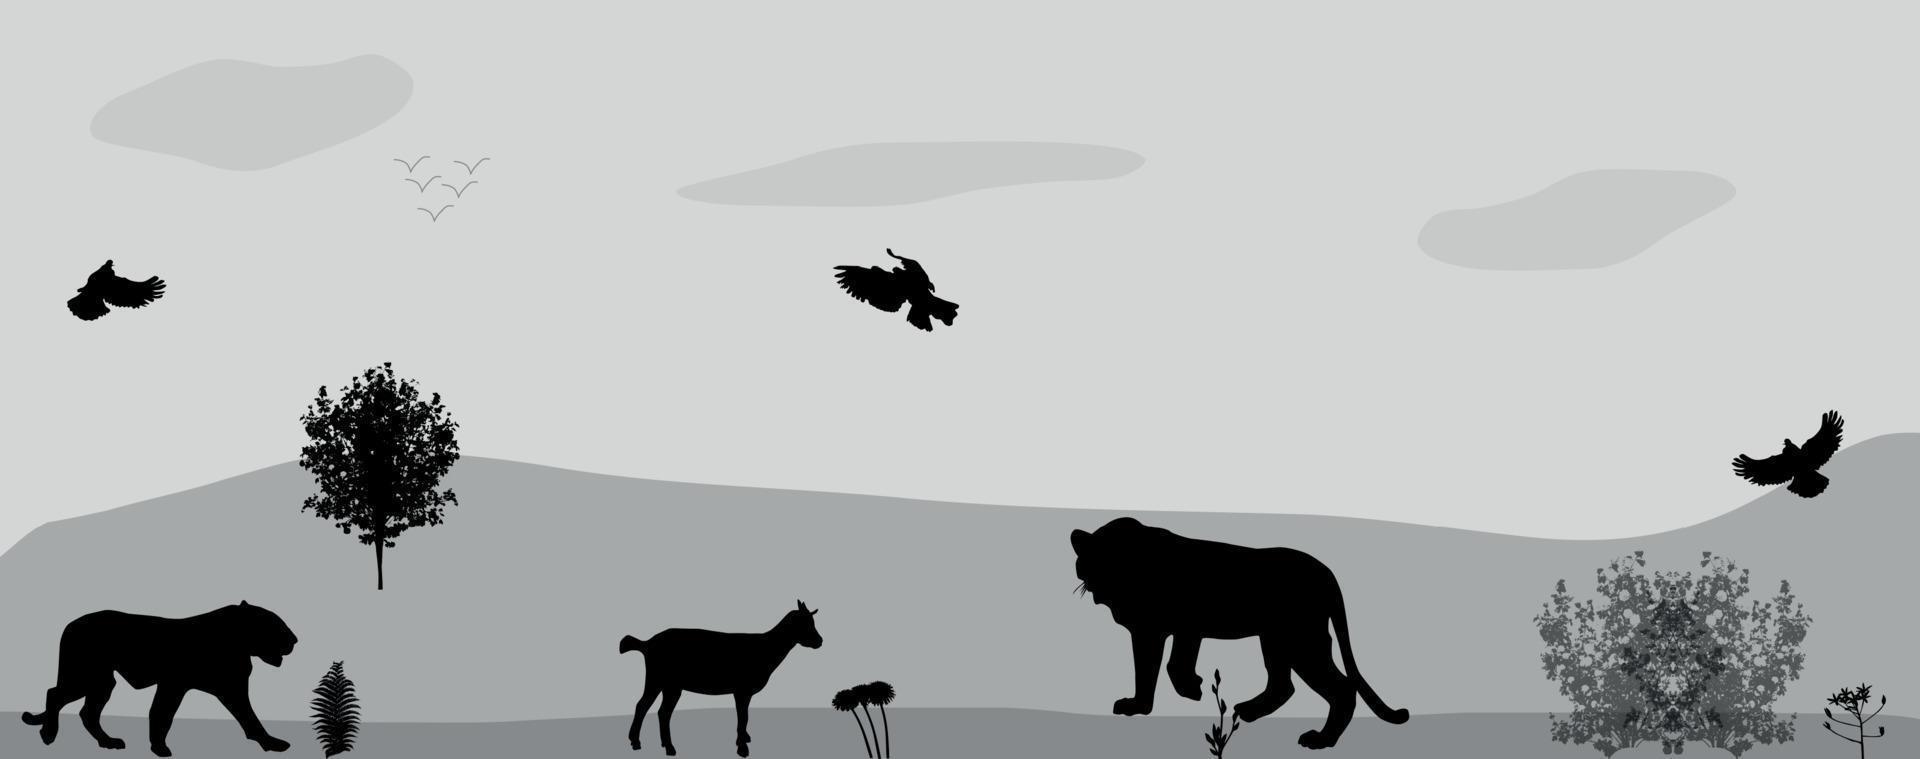 animaux sauvages à l'affût. illustration vectorielle. vecteur